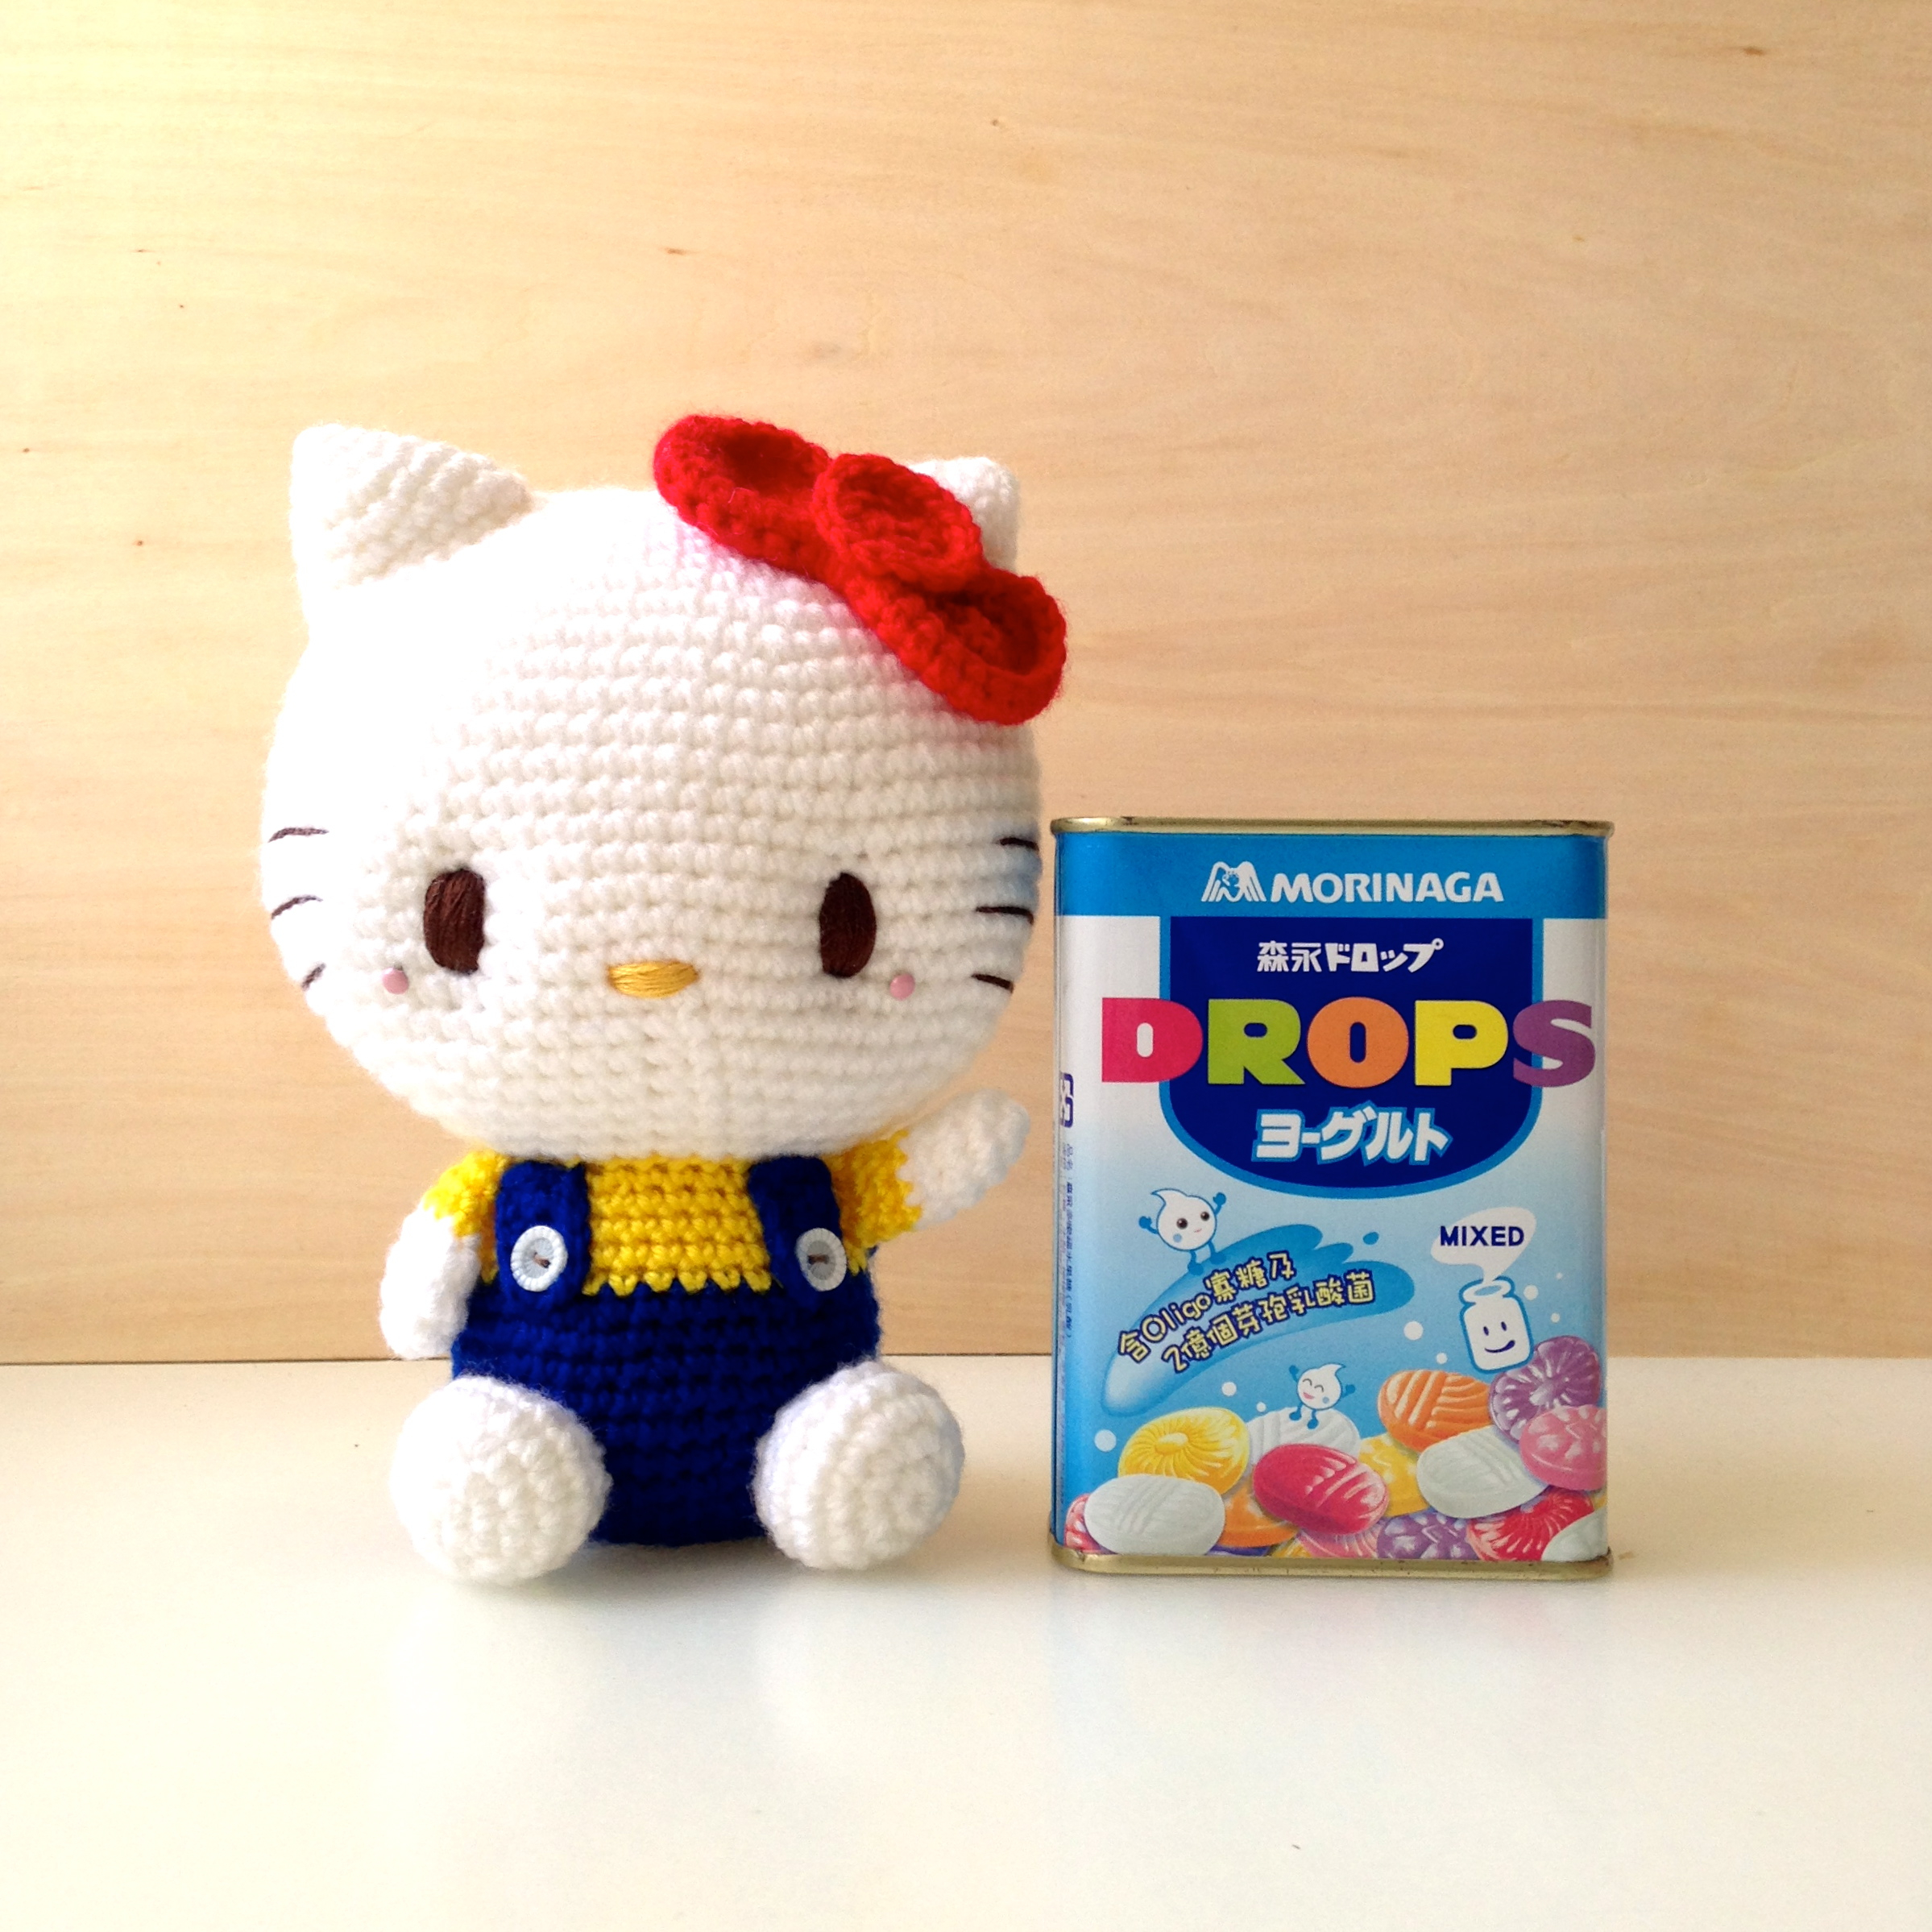 Hello Kitty Crochet Pattern Amigurumi Hello Kitty Search Results Amigurumei